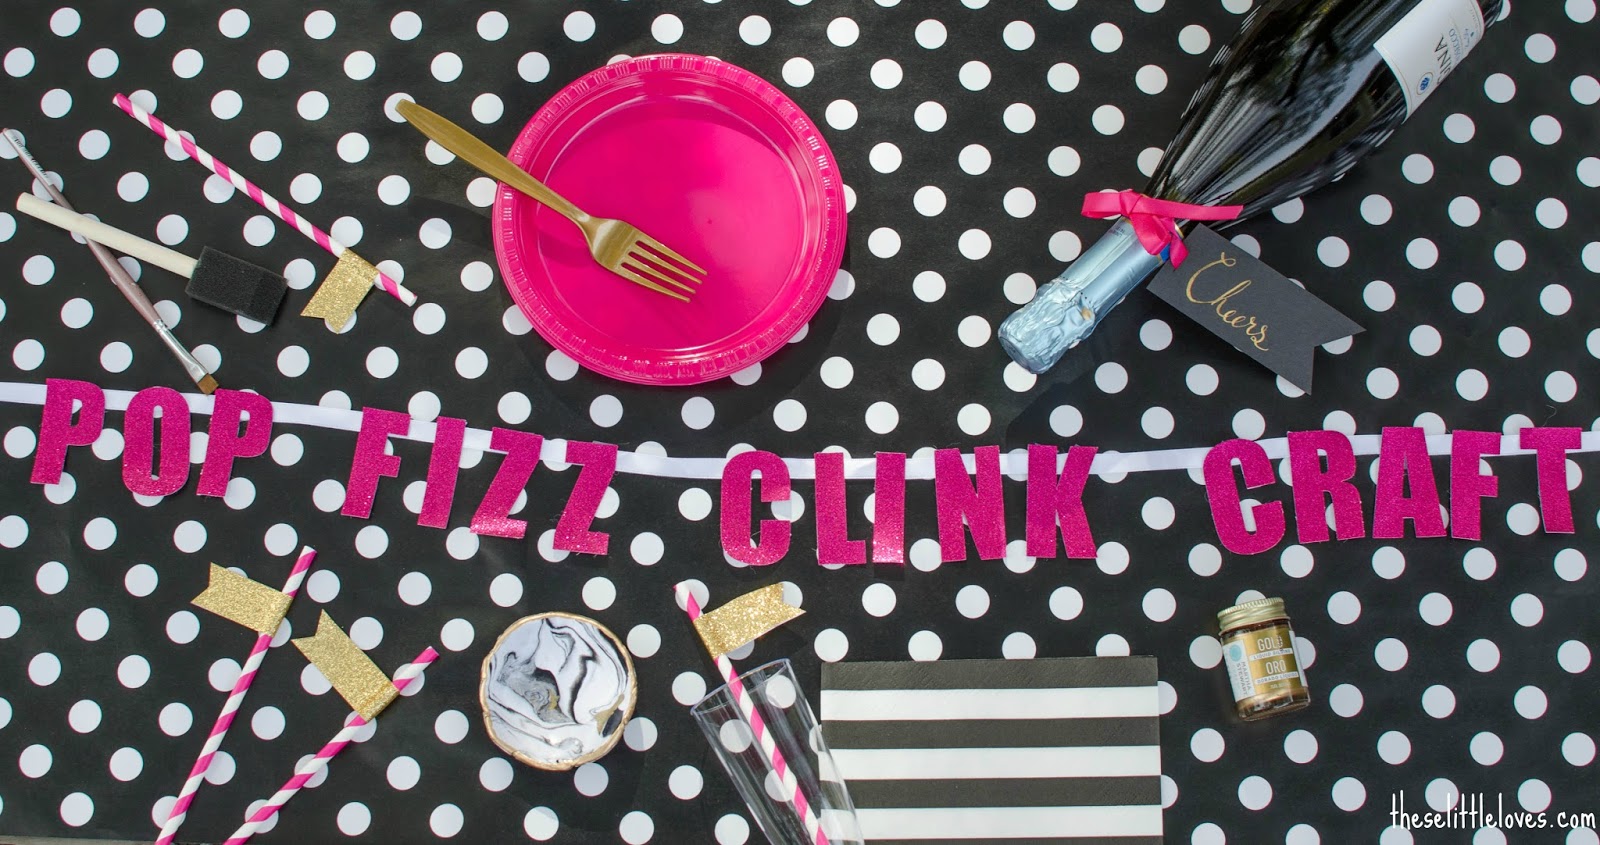 Pop Fizz Clink Craft | A Kate Spade Inspired Pinterest Craft Party